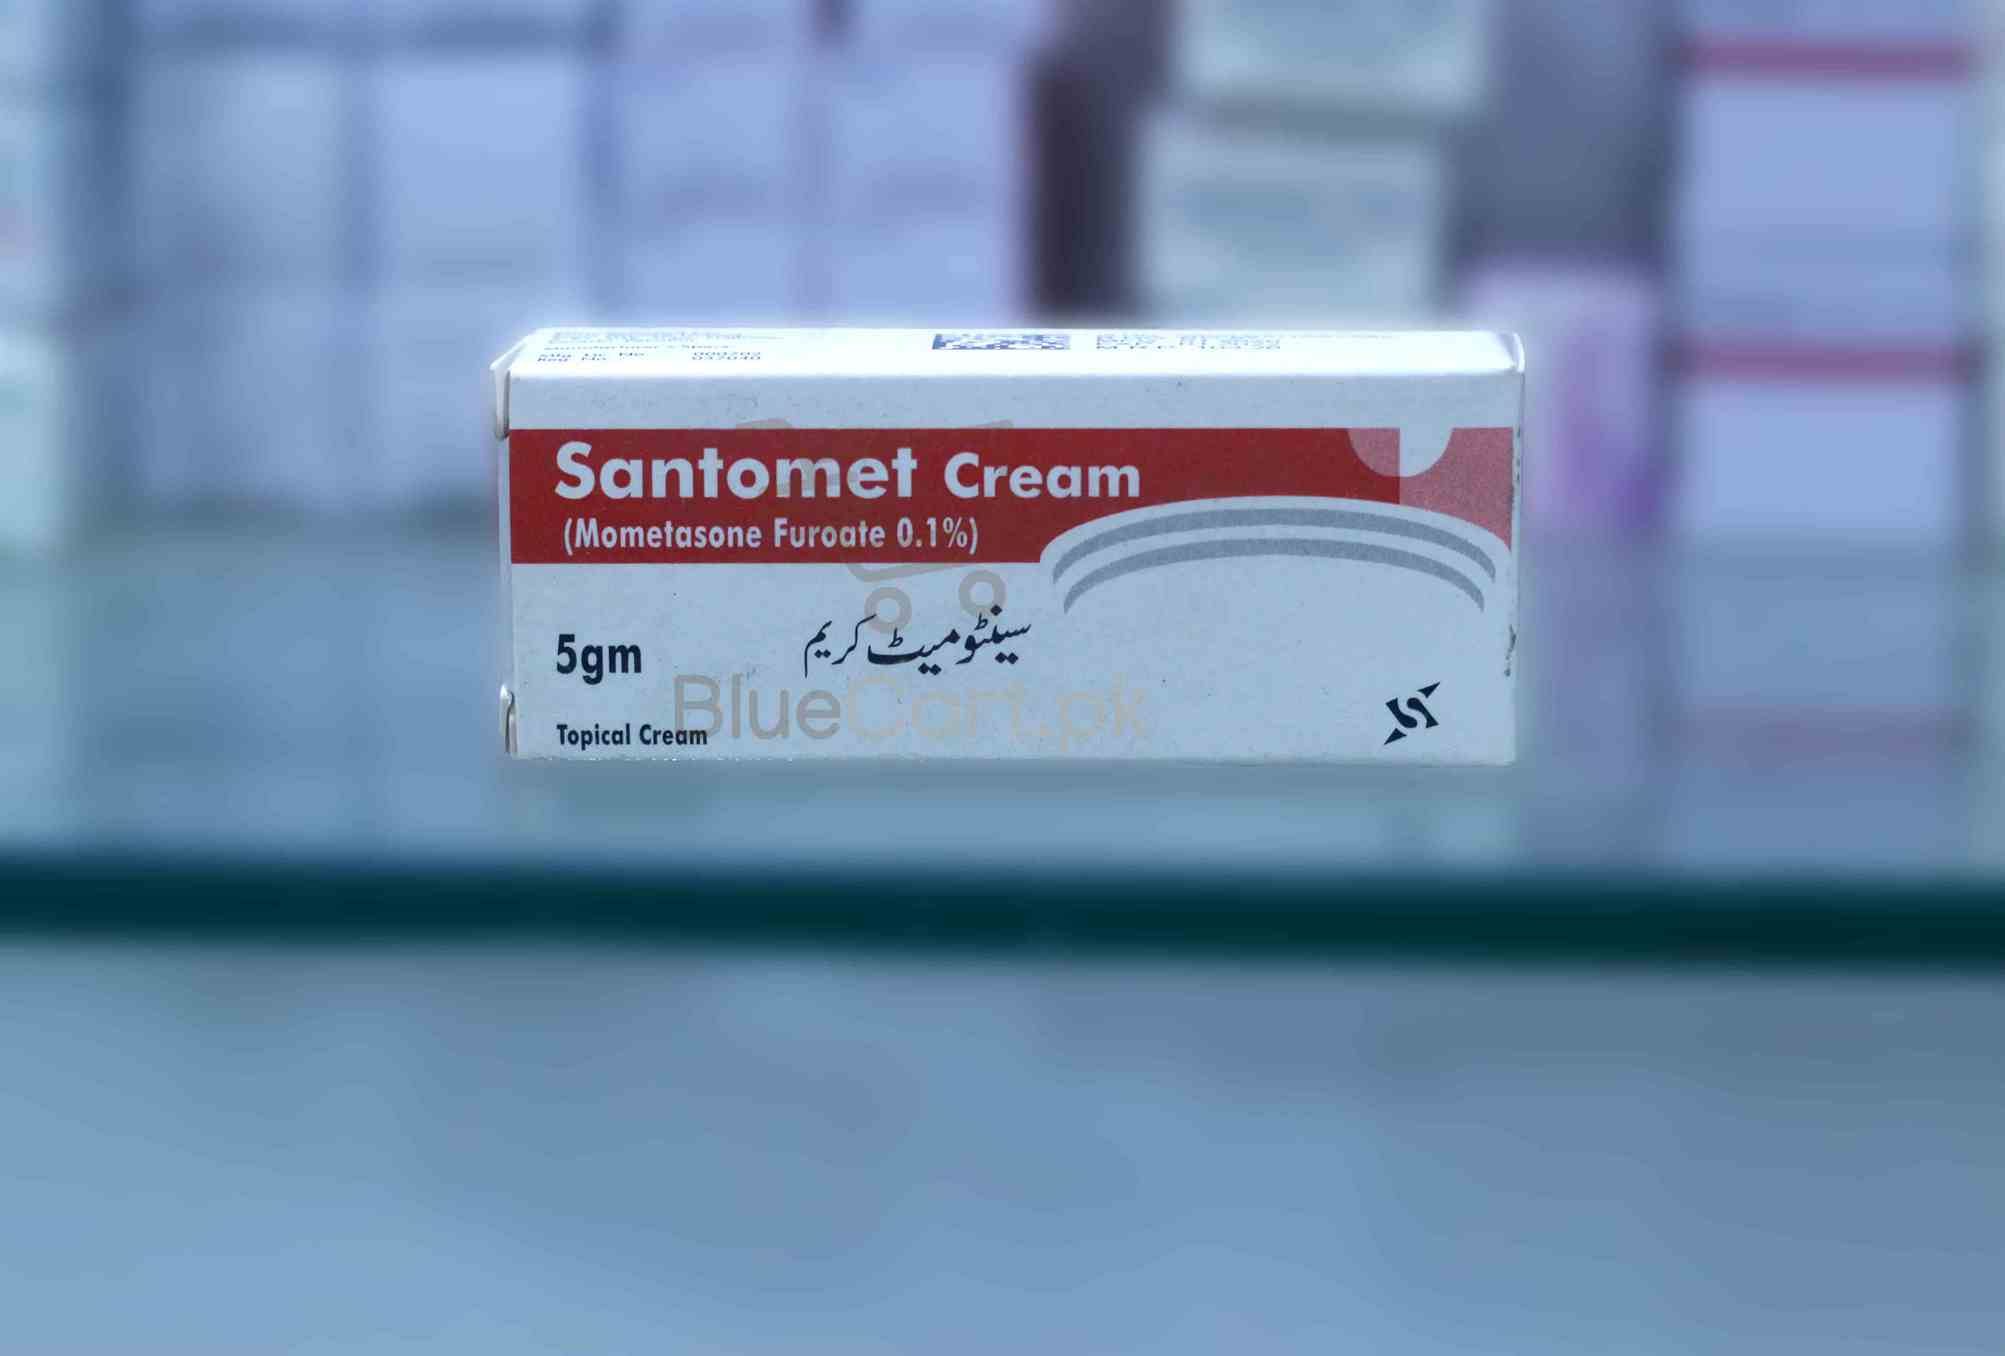 Santomet Cream